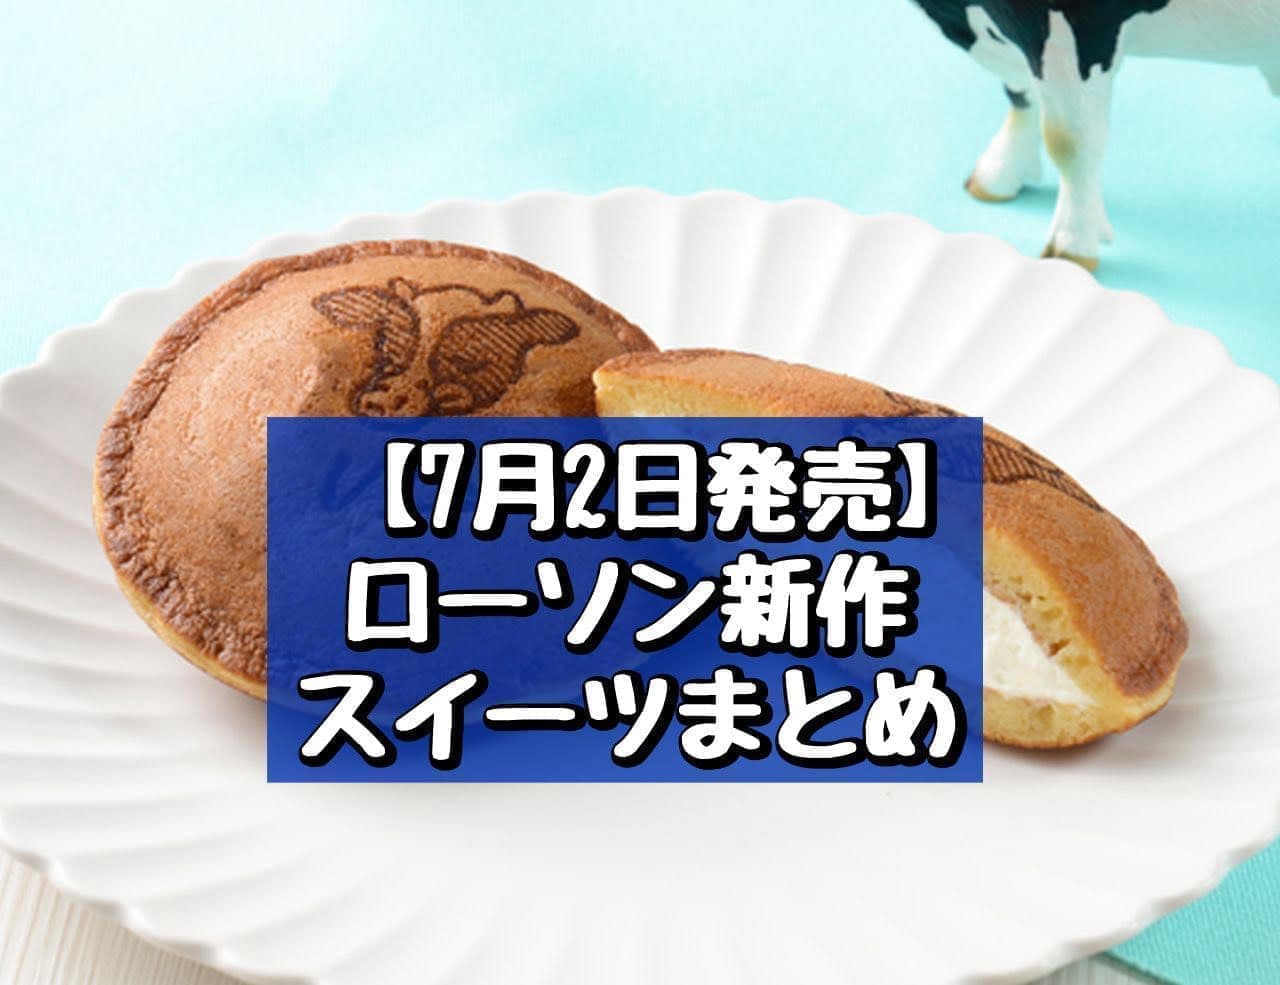 Lawson "Uchi Cafe x Milk MILK Doramochi